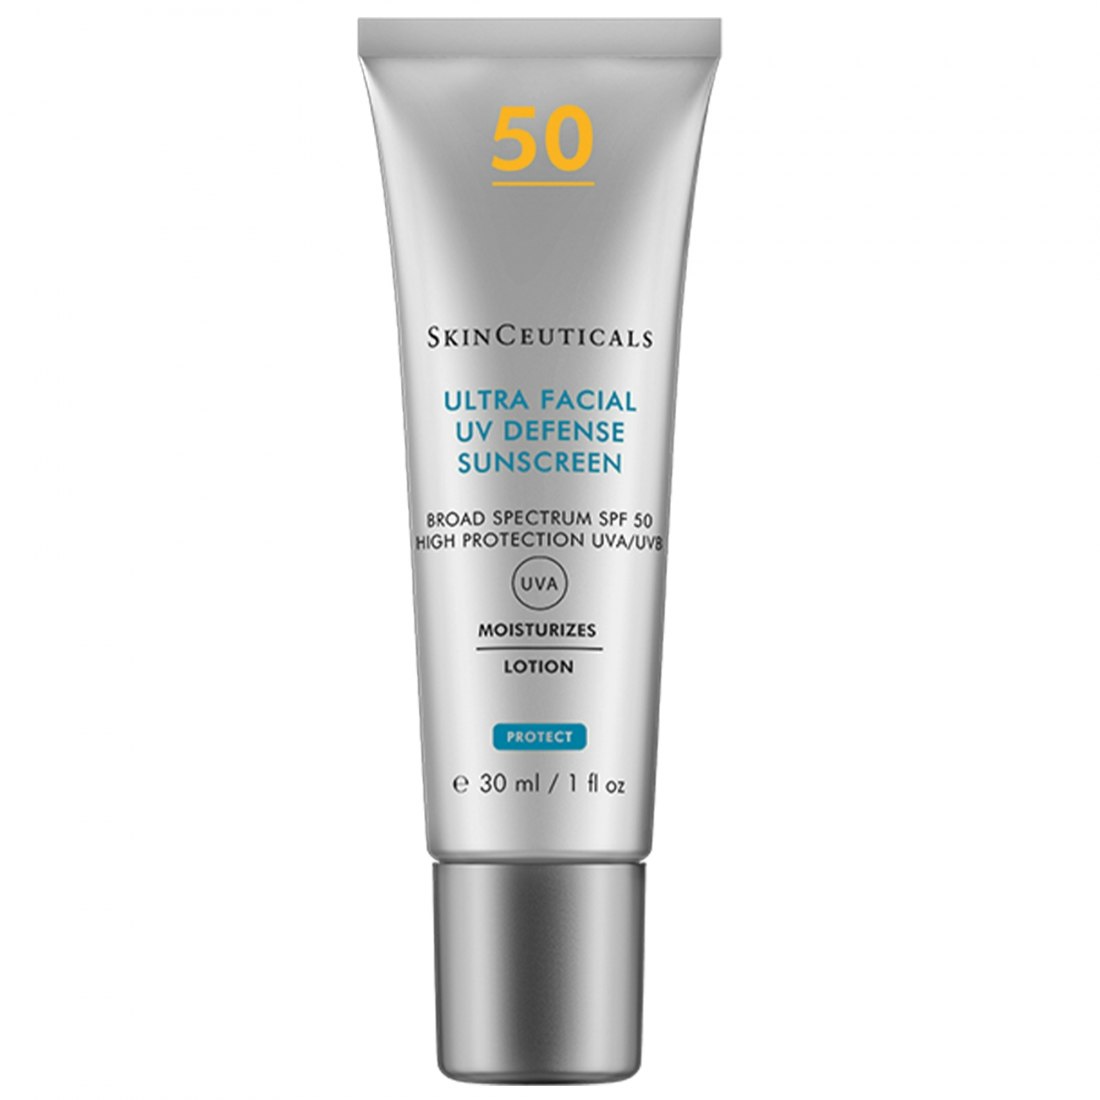 Skin ceuticals Ultra Facial Defense SPF 50+